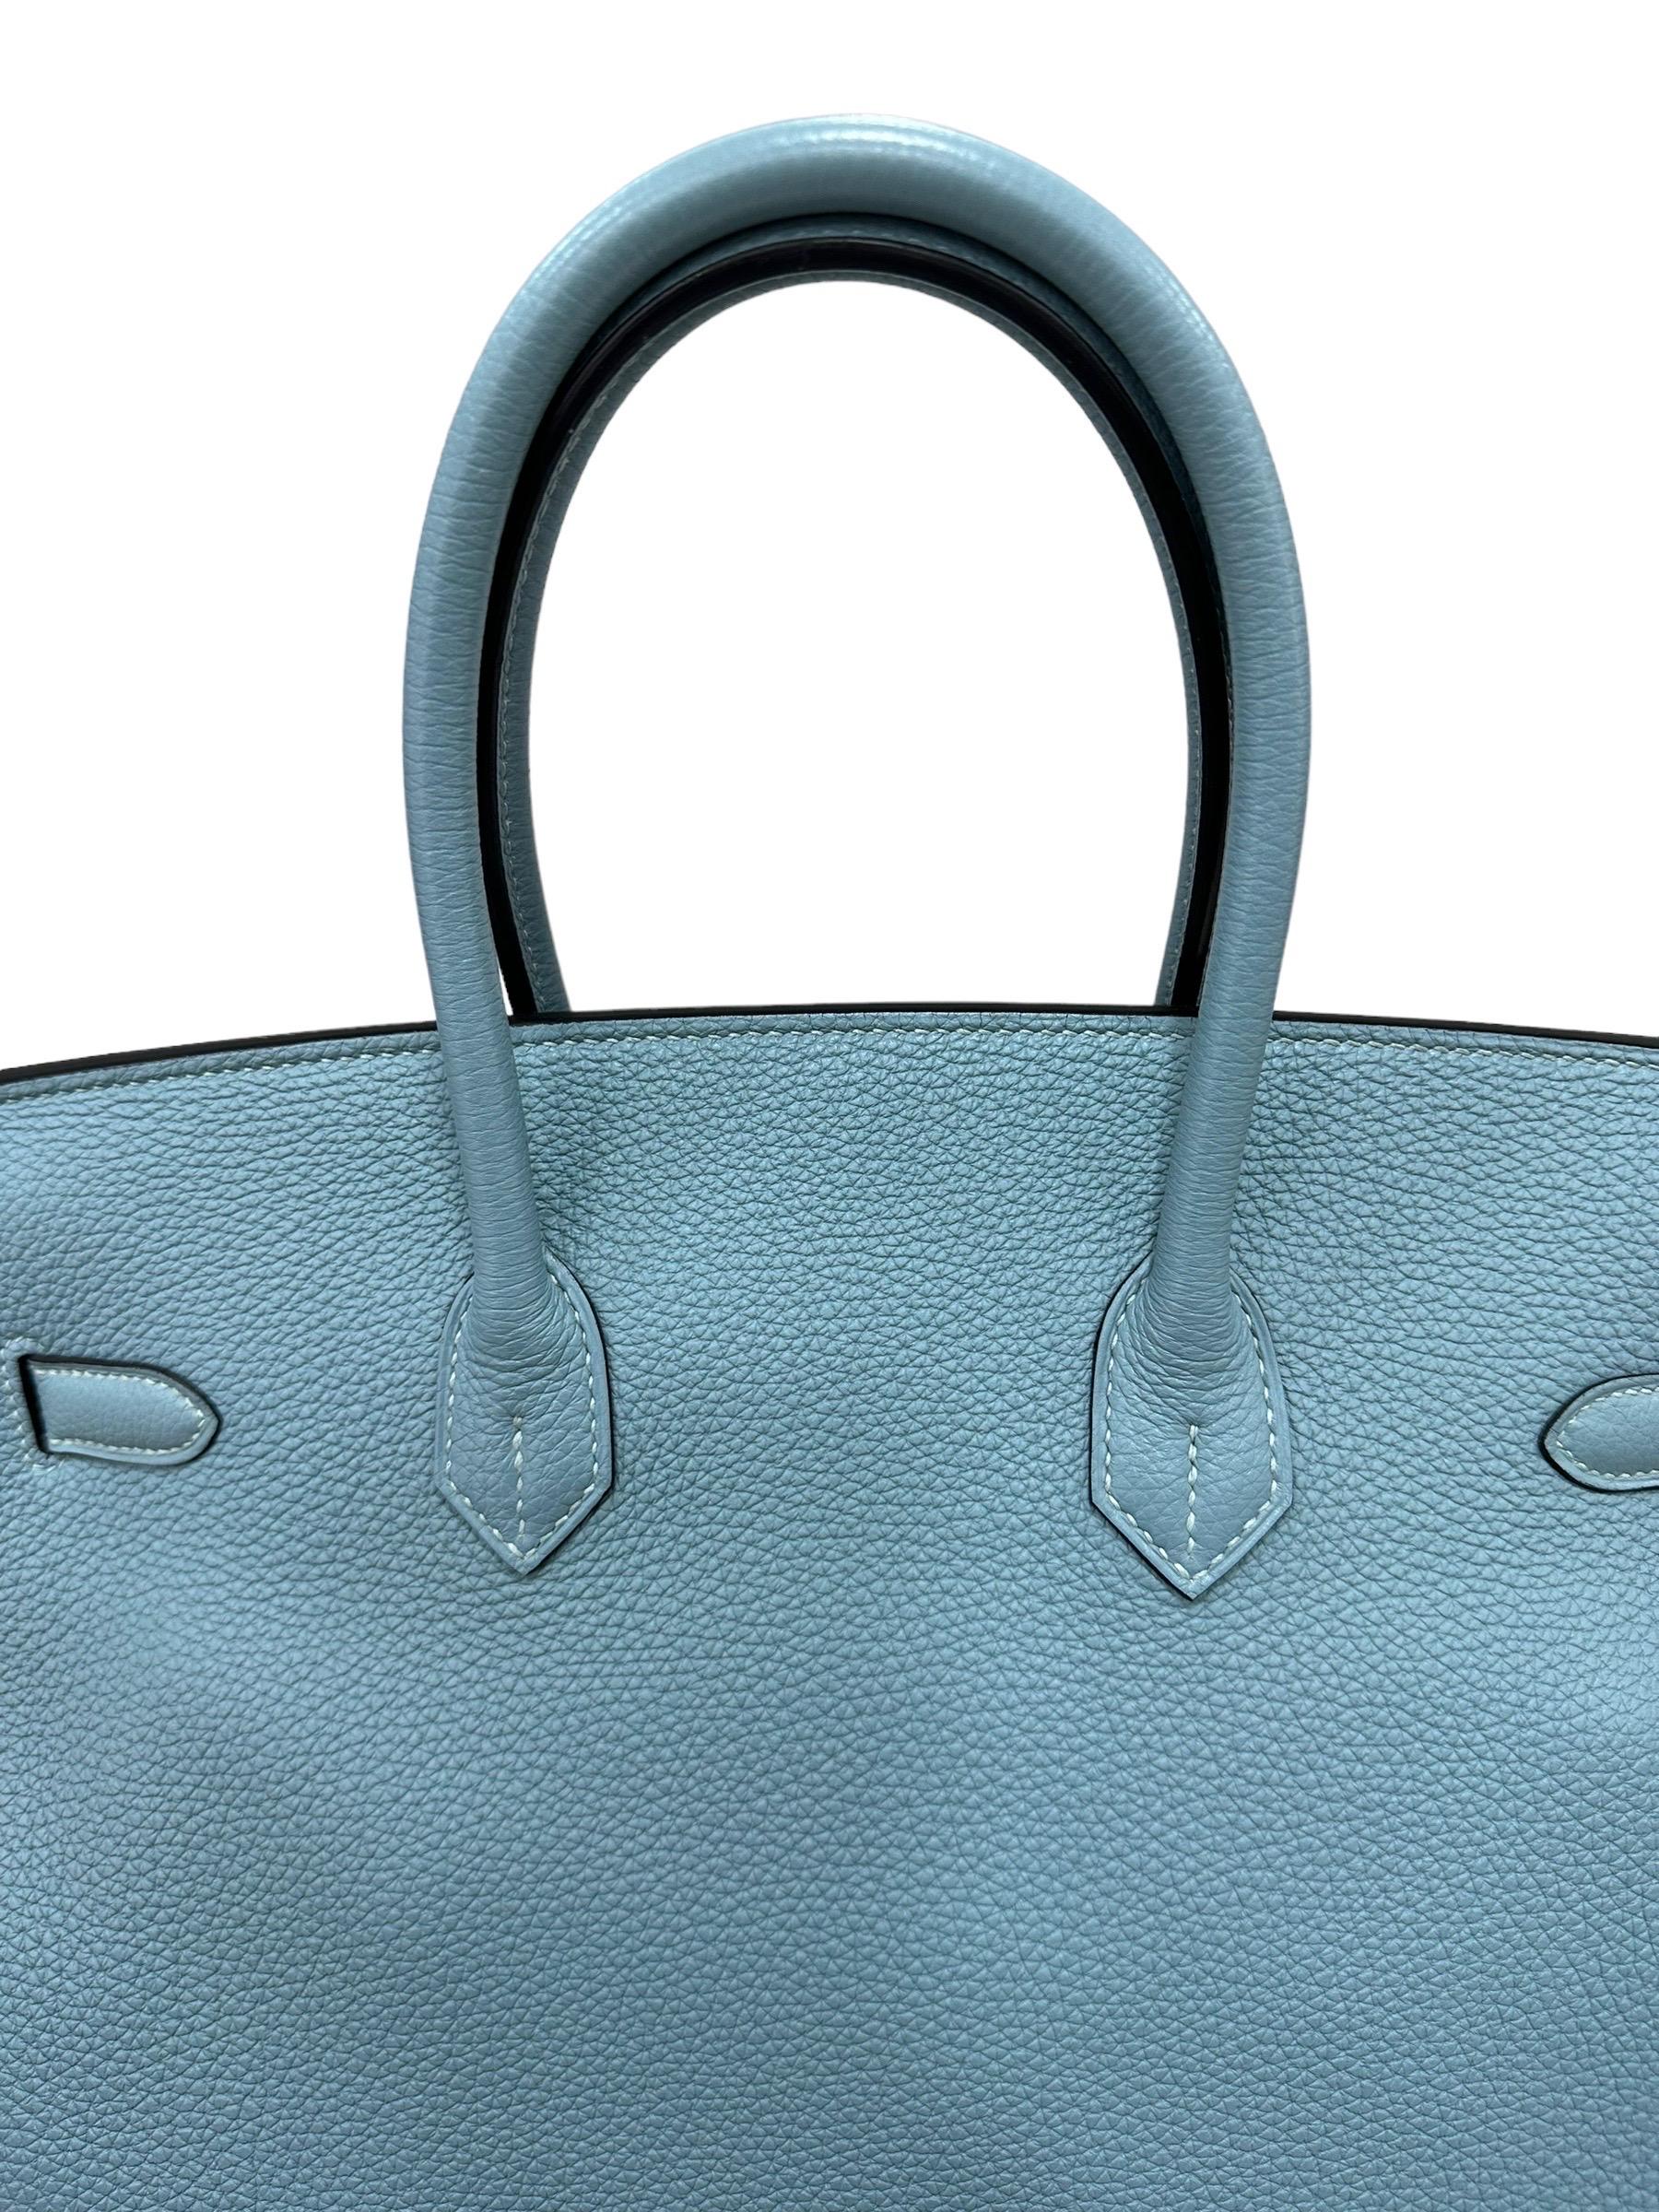 2009 Hermès Birkin 35 Togo Leather Ciel Top Handle Bag For Sale 8